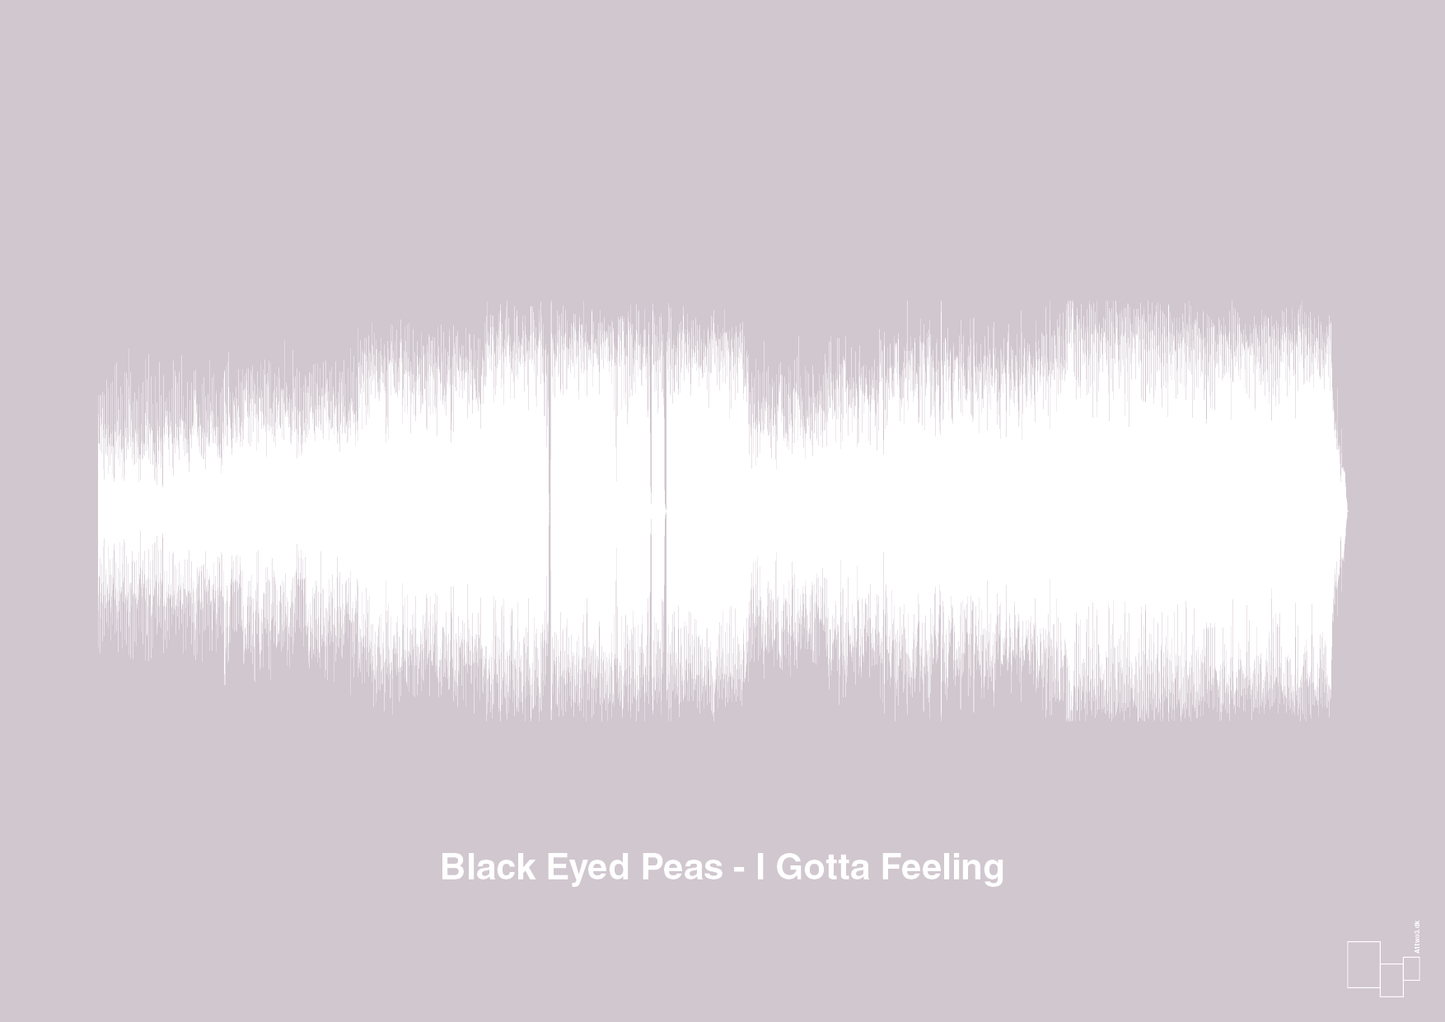 black eyed peas - i gotta feeling - Plakat med Musik i Dusty Lilac